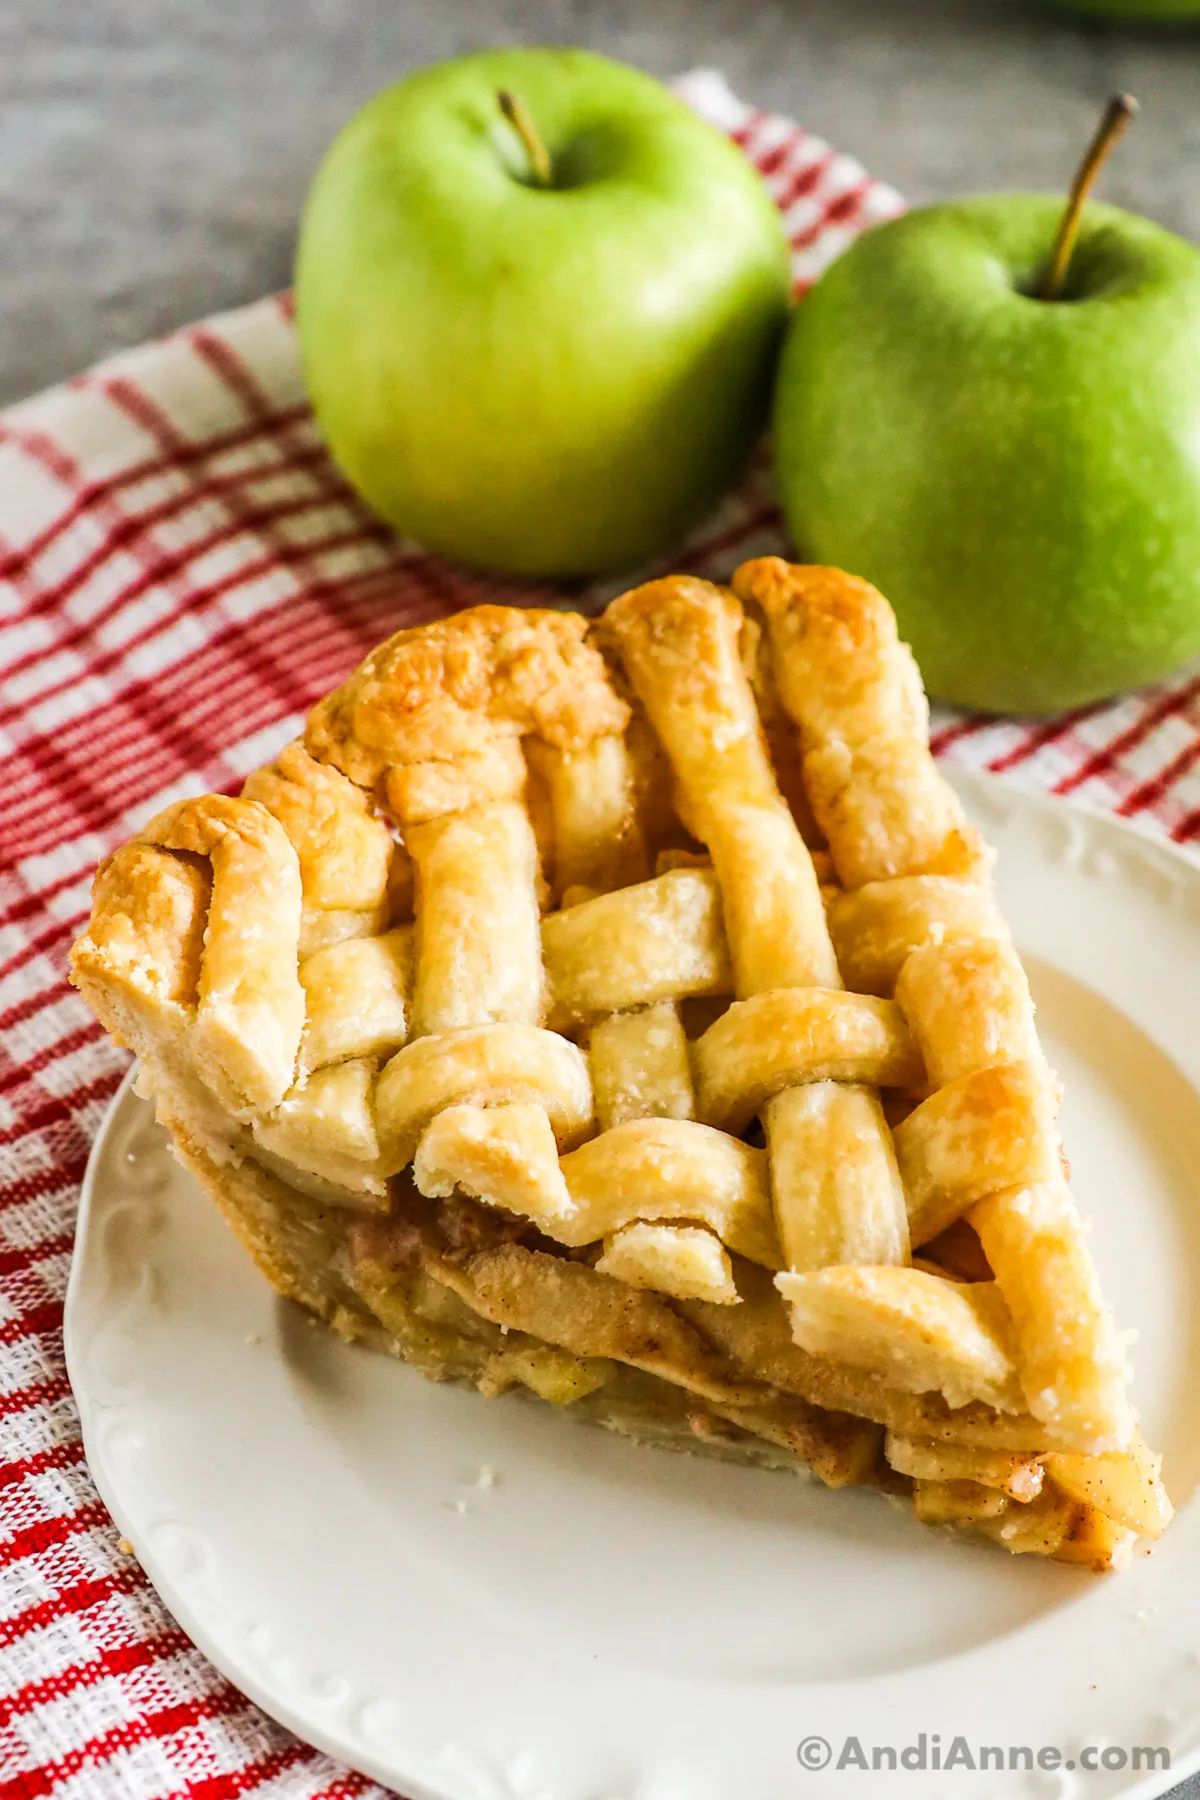 A slice of apple pie with lattice pie crust.